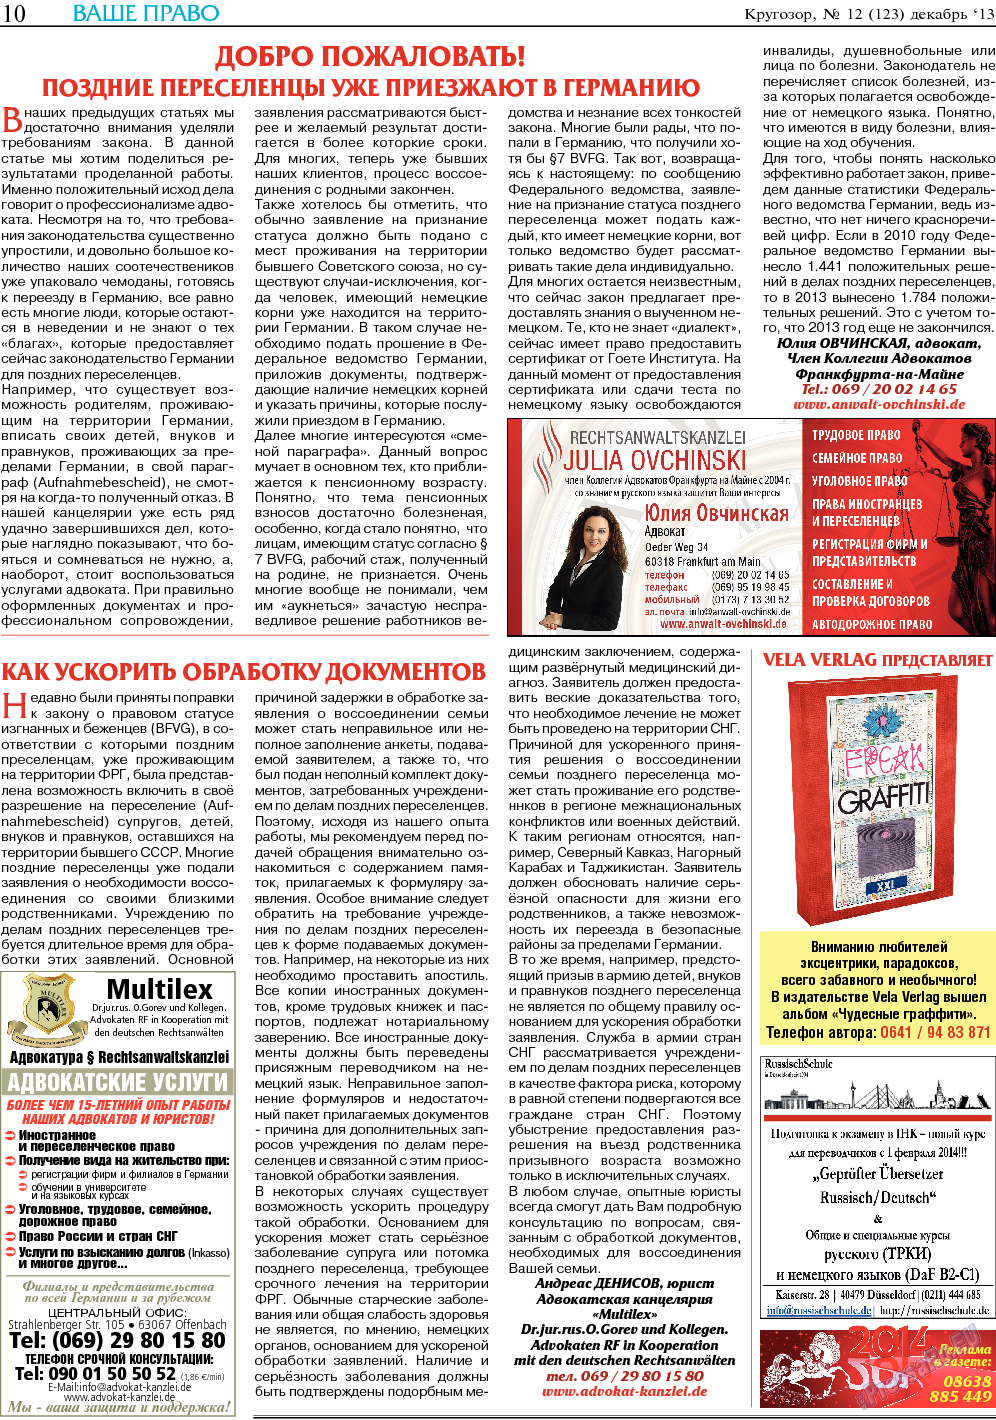 Кругозор, газета. 2013 №12 стр.10